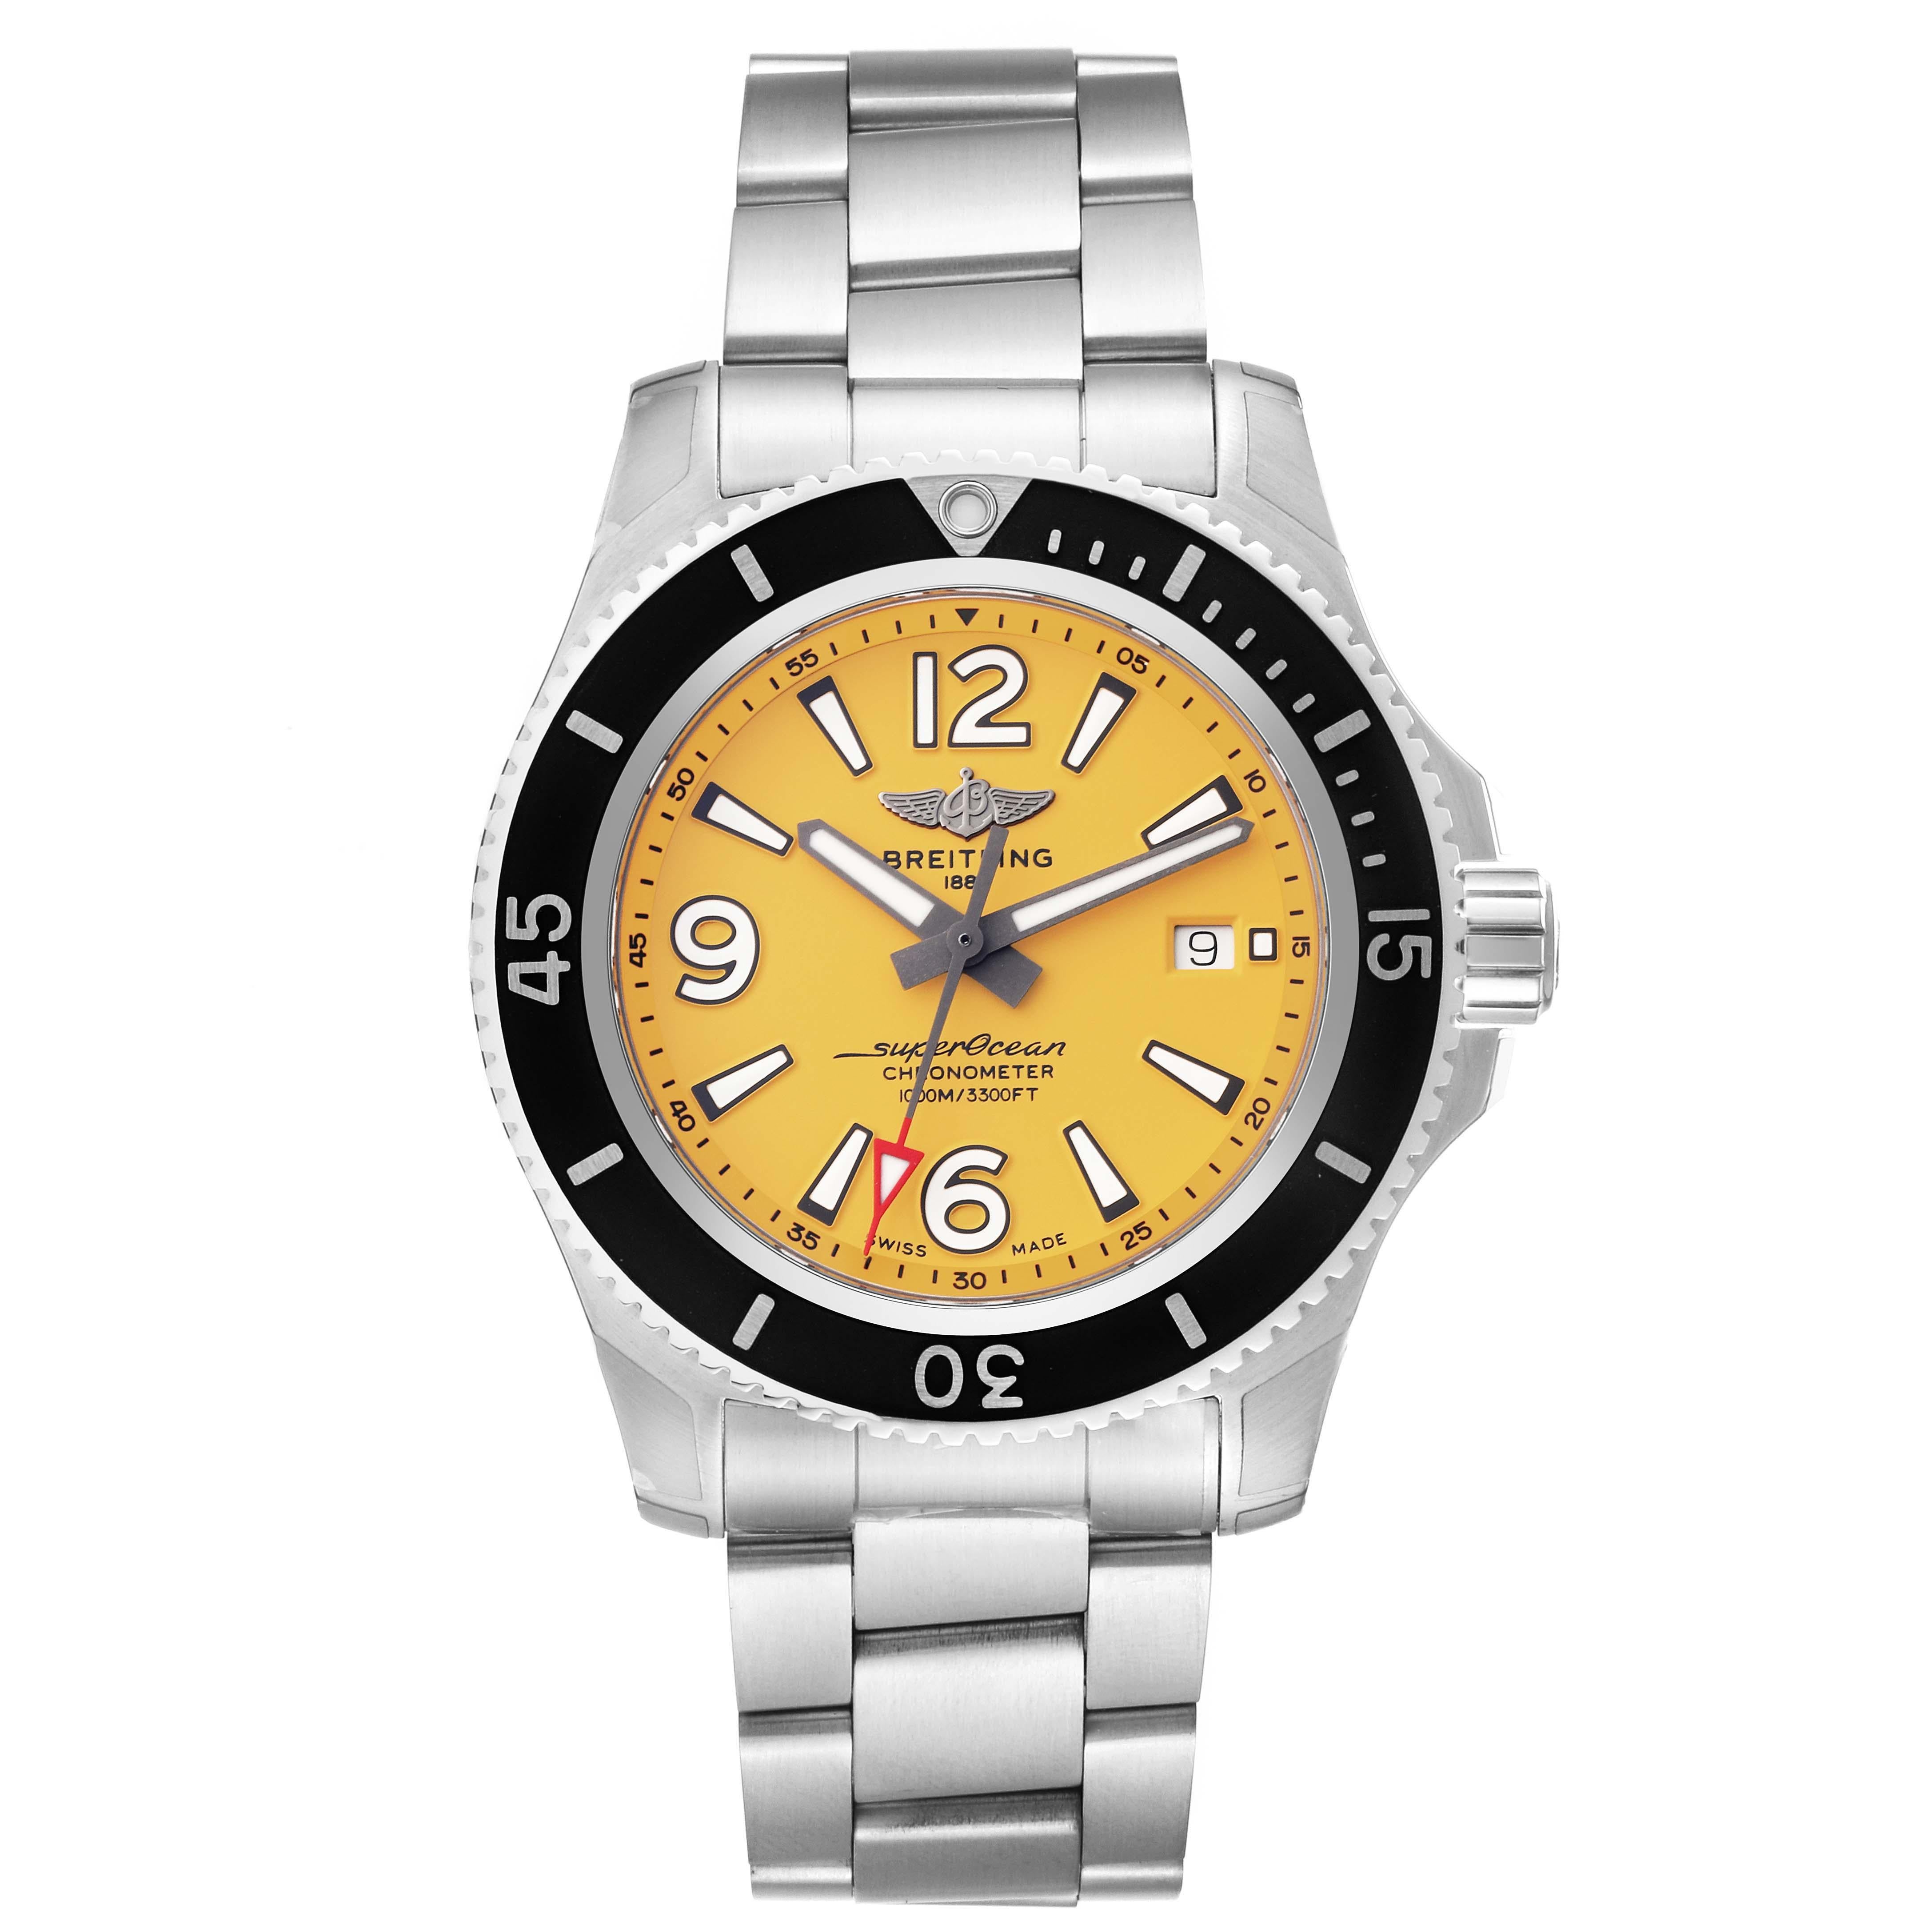 Breitling Superocean II Gelbes Zifferblatt Stahl Herrenuhr A17367 Ungetragen. Automatisches Uhrwerk mit automatischem Aufzug. Gehäuse aus Edelstahl mit einem Durchmesser von 44 mm. Verschraubte Krone und Drücker aus Edelstahl. Schwarze, einseitig